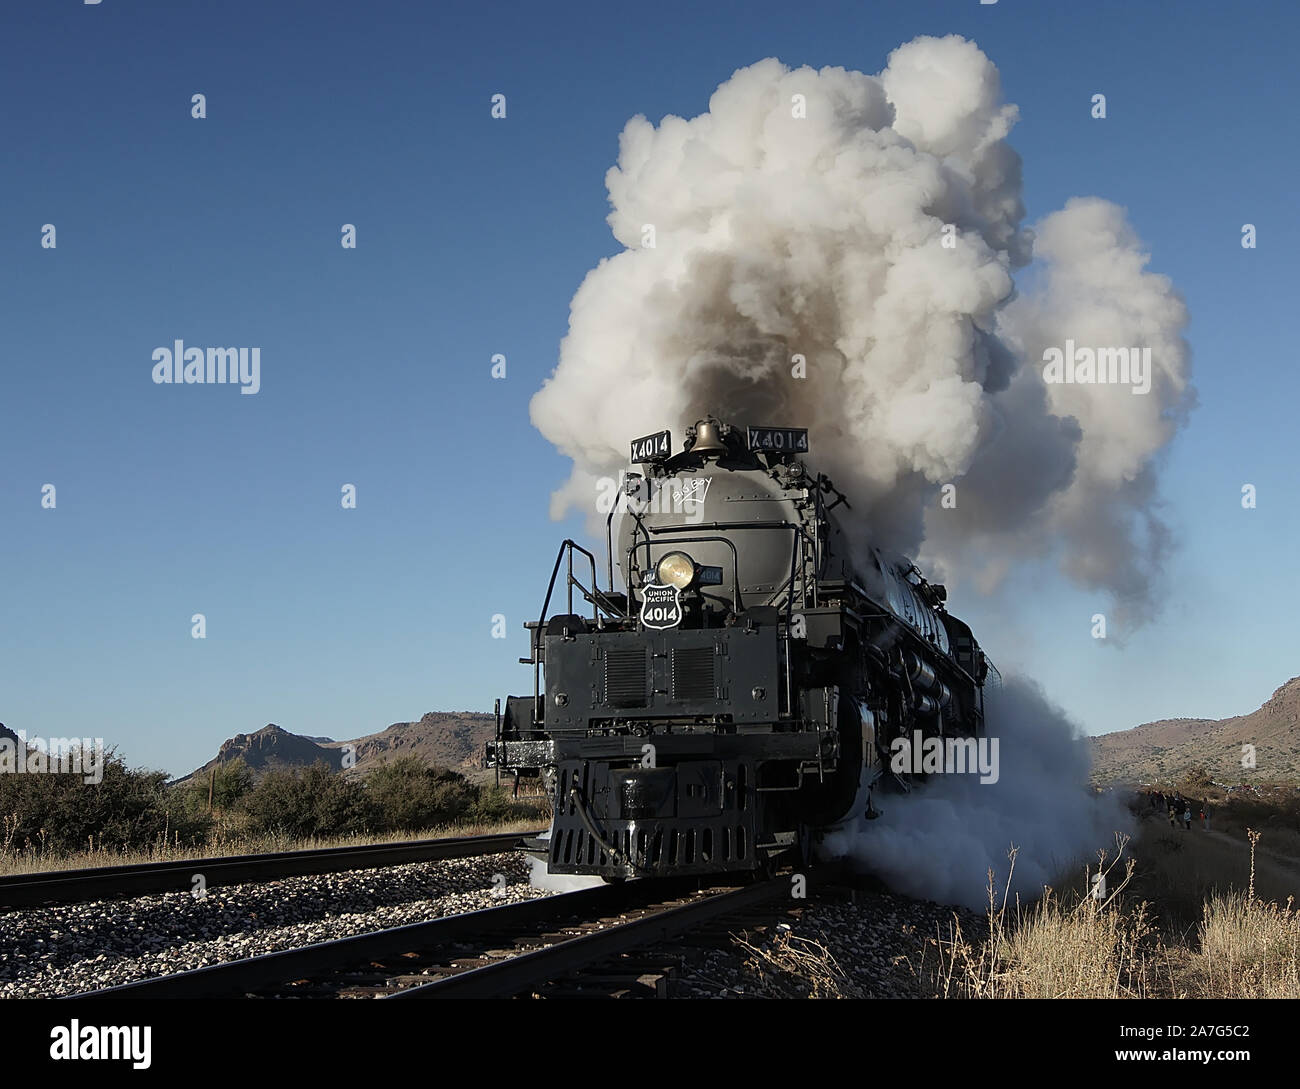 Celebra il centocinquantesimo anniversario della ferrovia transcontinentale, Union Pacific's storica Big Boy locomotiva a vapore n. 4014 è in tournée negli Stati Uniti. Foto Stock